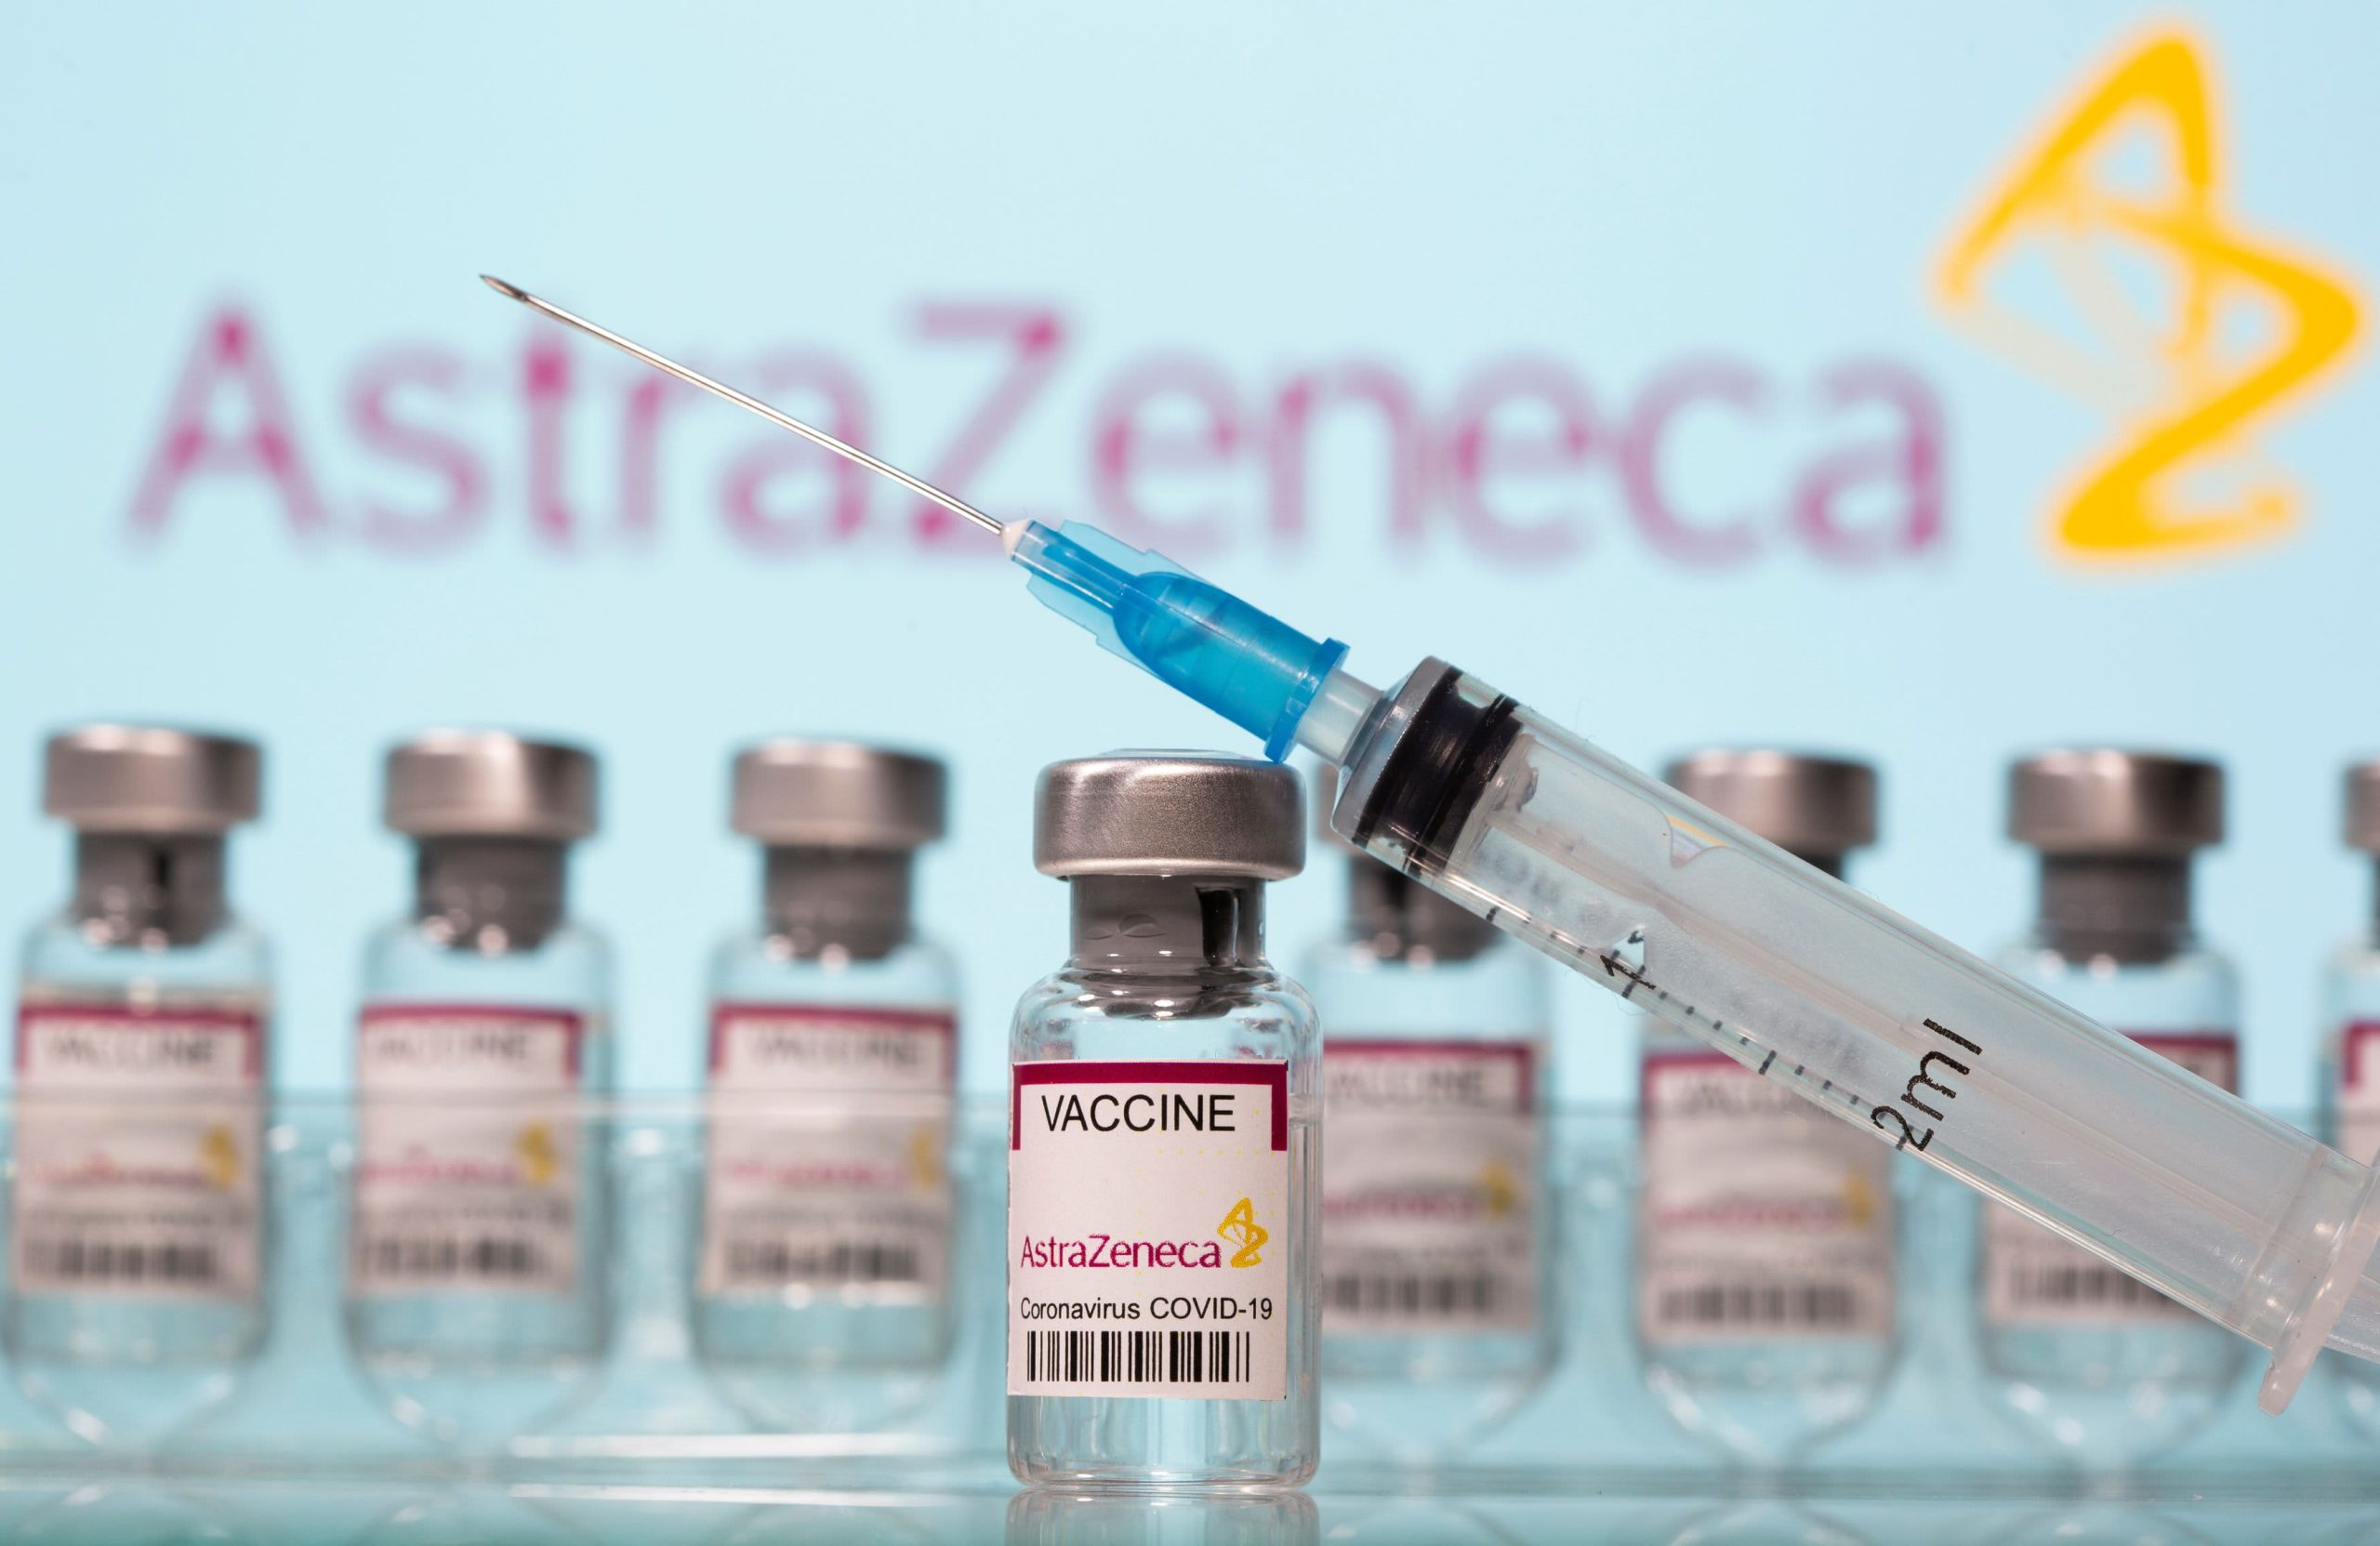 Δανία για το εμβόλιο της AstraZeneca: «Αποφασίσαμε σήμερα να παρατείνουμε την αναστολή κατά τρεις εβδομάδες»